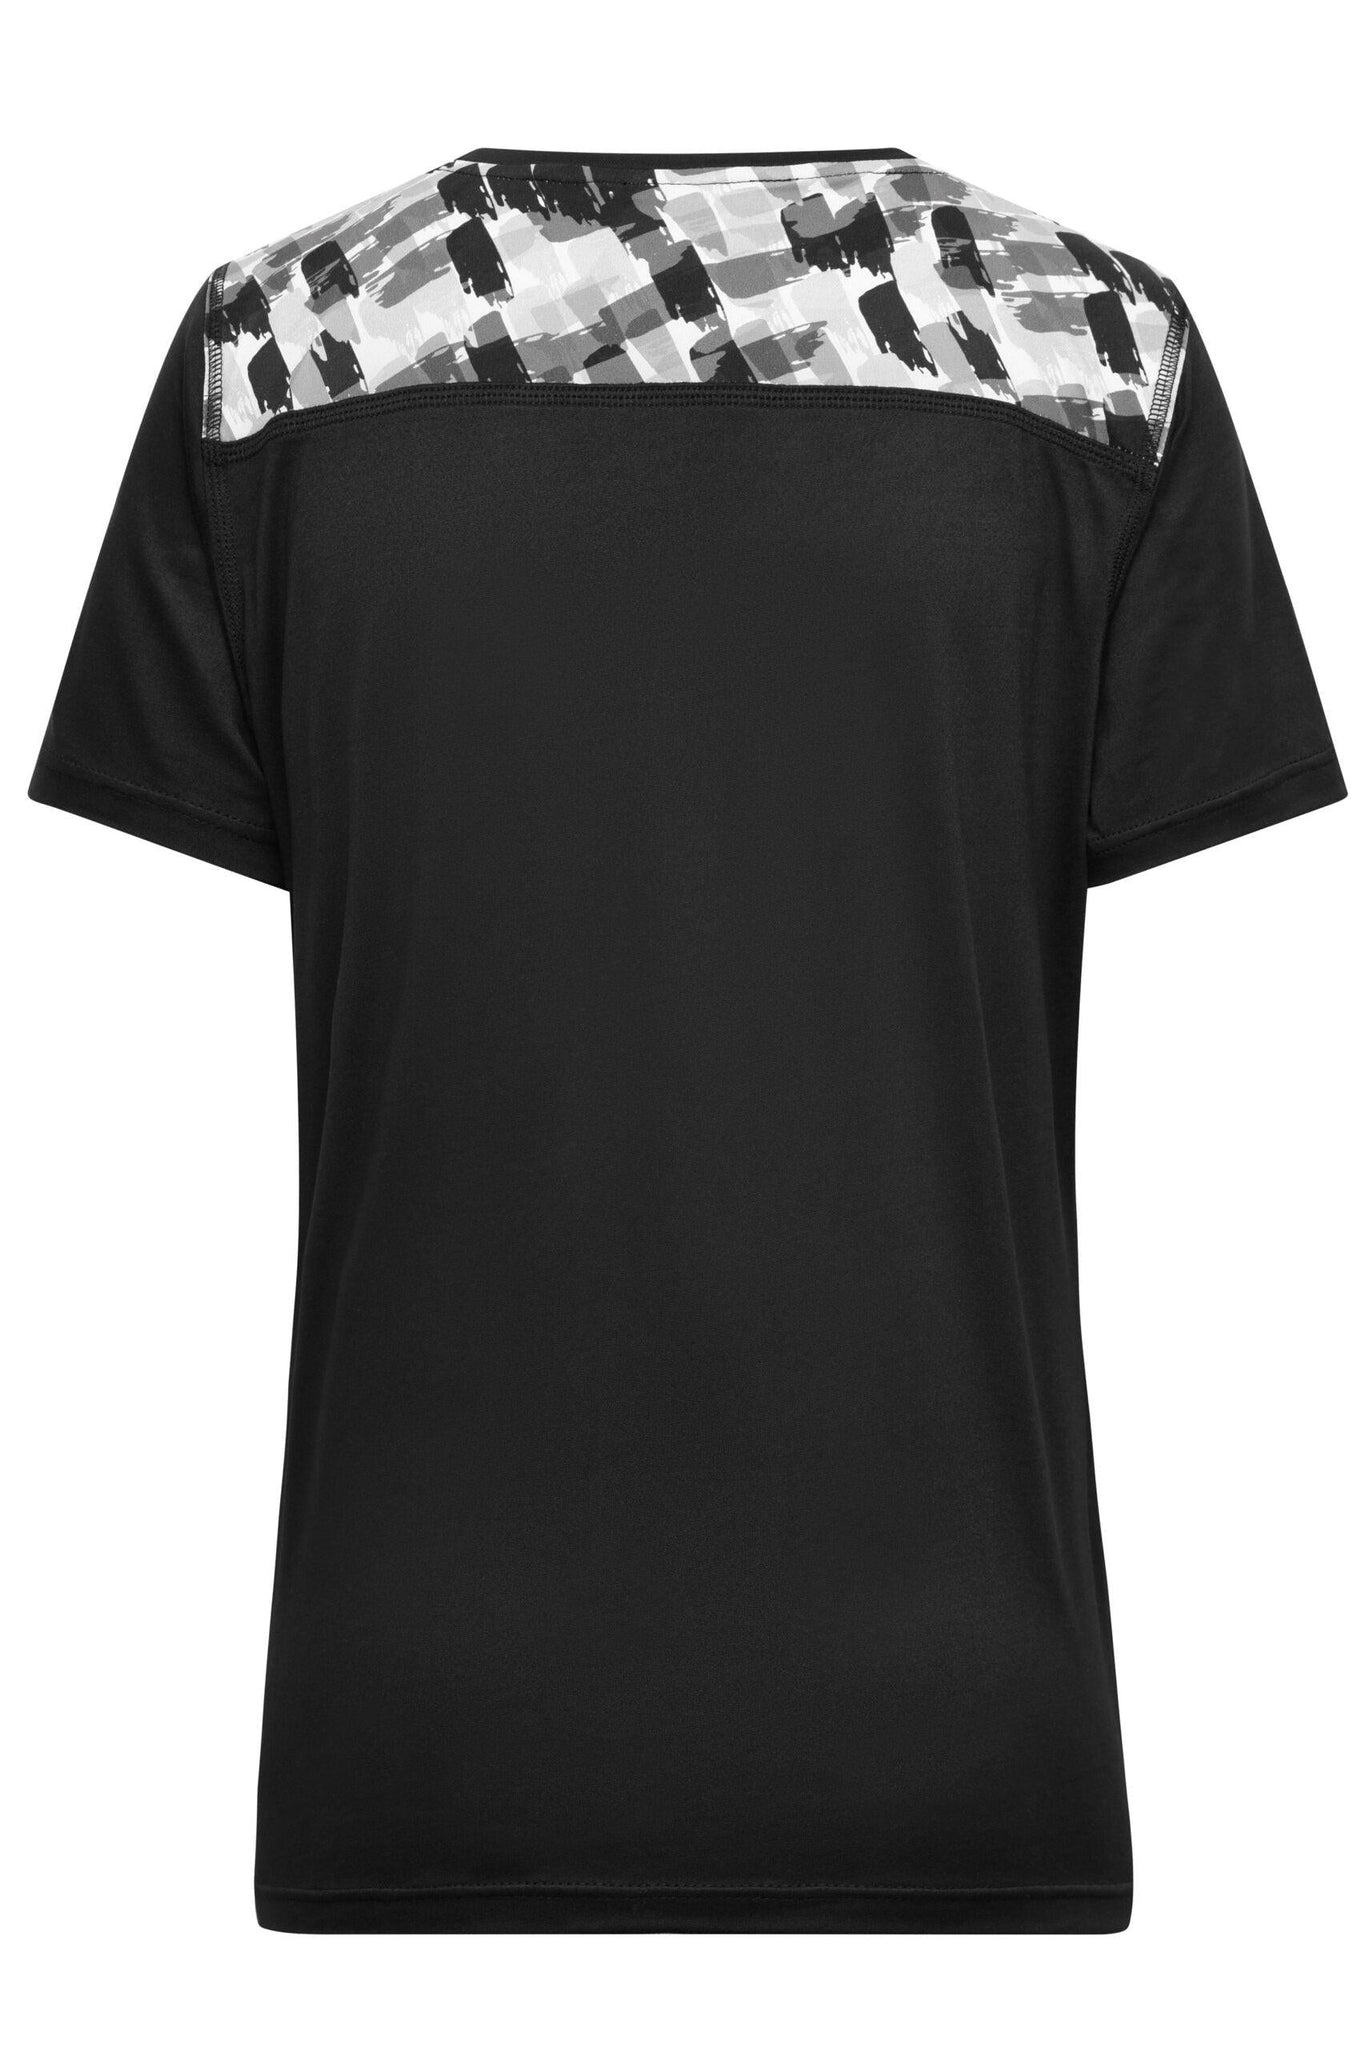 J&N DAME SPORTS T-SHIRT - Fitness T-Shirt - JA Profil 